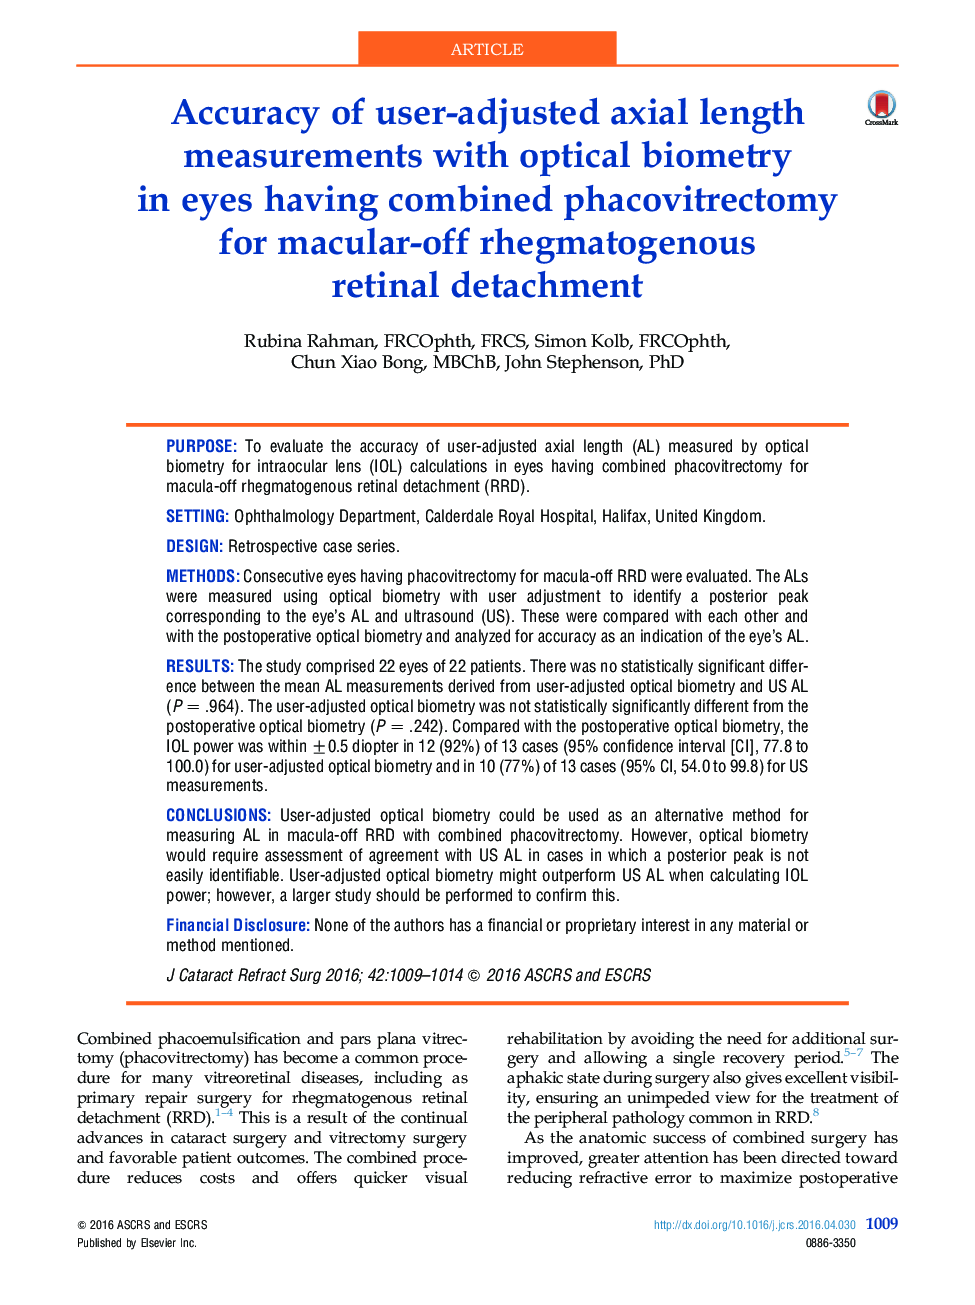 دقت اندازه گیری های محوری طول عمودی با بیومتریک نوری در چشم، داروی ترکیبی فاوویتروکتومی برای جداسازی شبکه شبکیه رگماتوژنیک